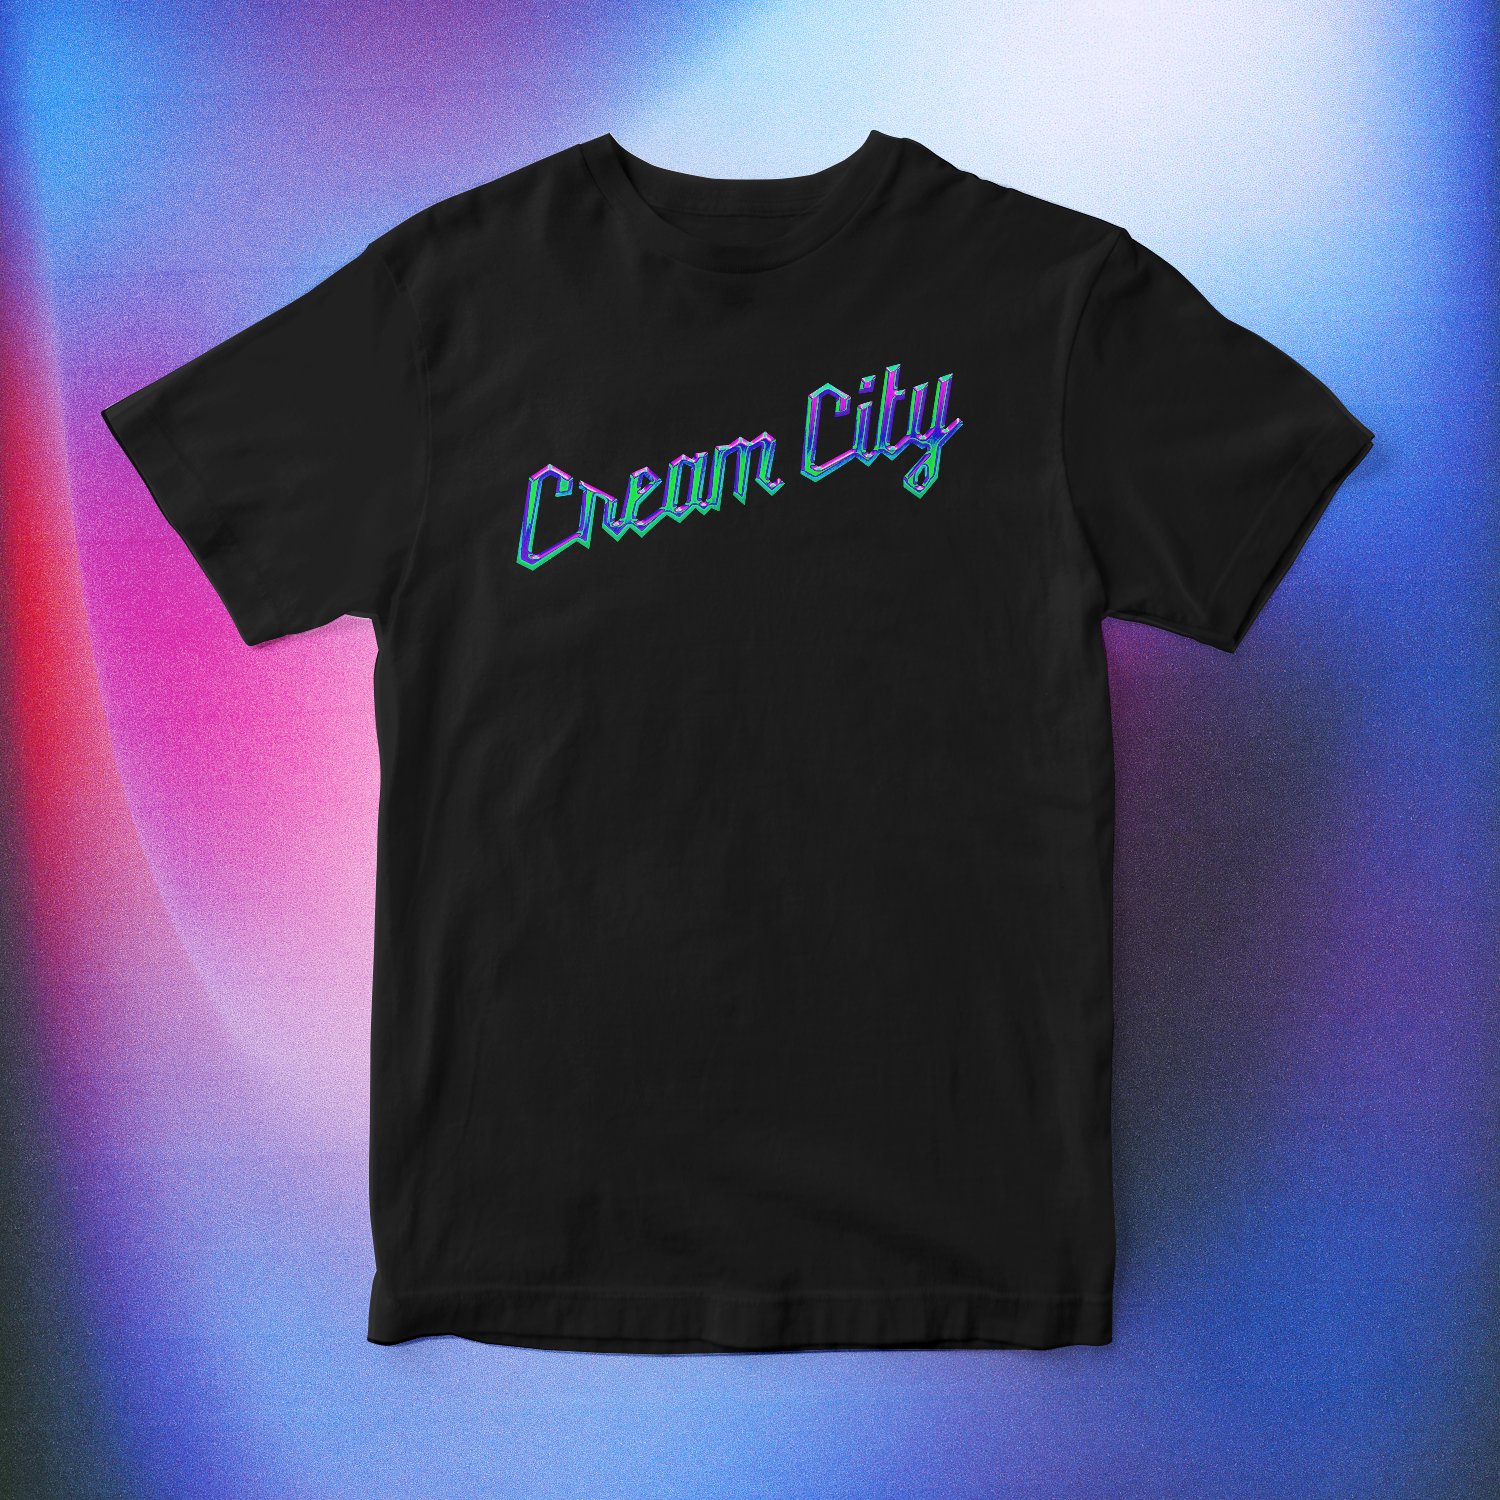 Cream City Chrome T-Shirt